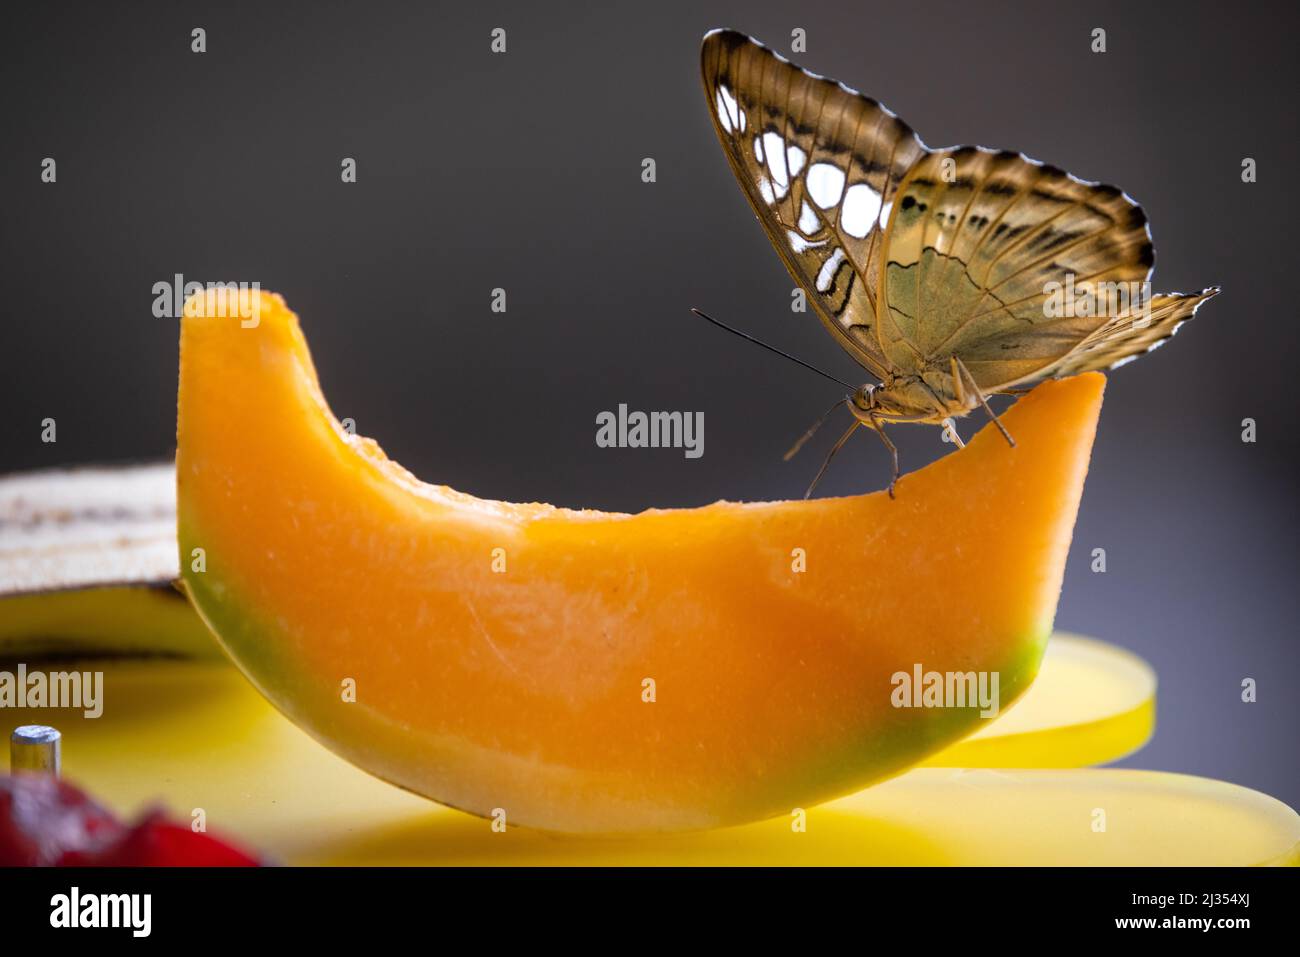 Una farfalla con ali spotted marroni e bianche si sta alimentando su una fetta di melone contro uno sfondo bokeh Foto Stock